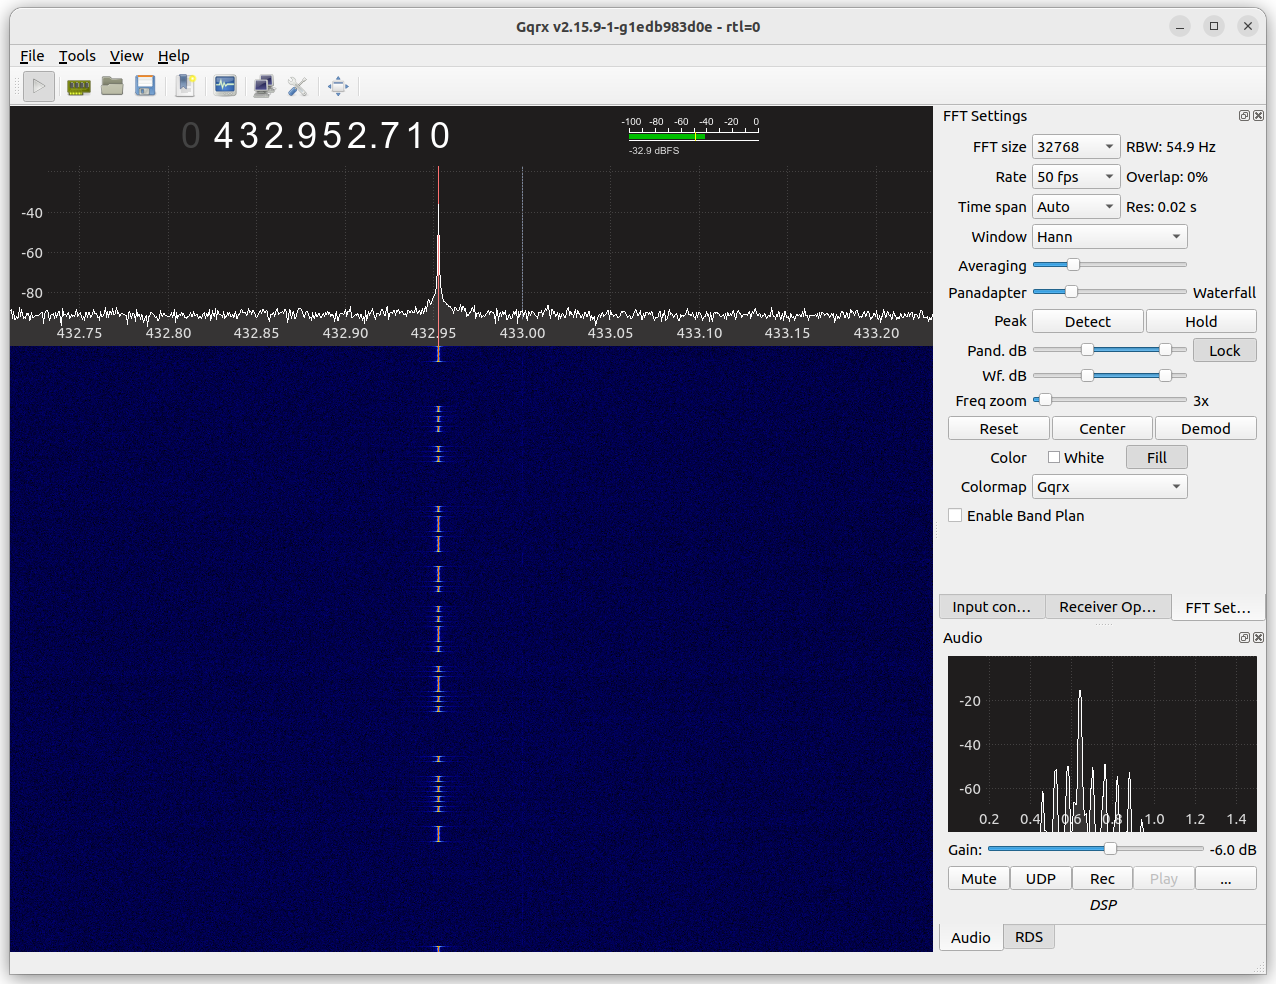 Gqrx receiving morse code from the 433 MHz hidden transmitter